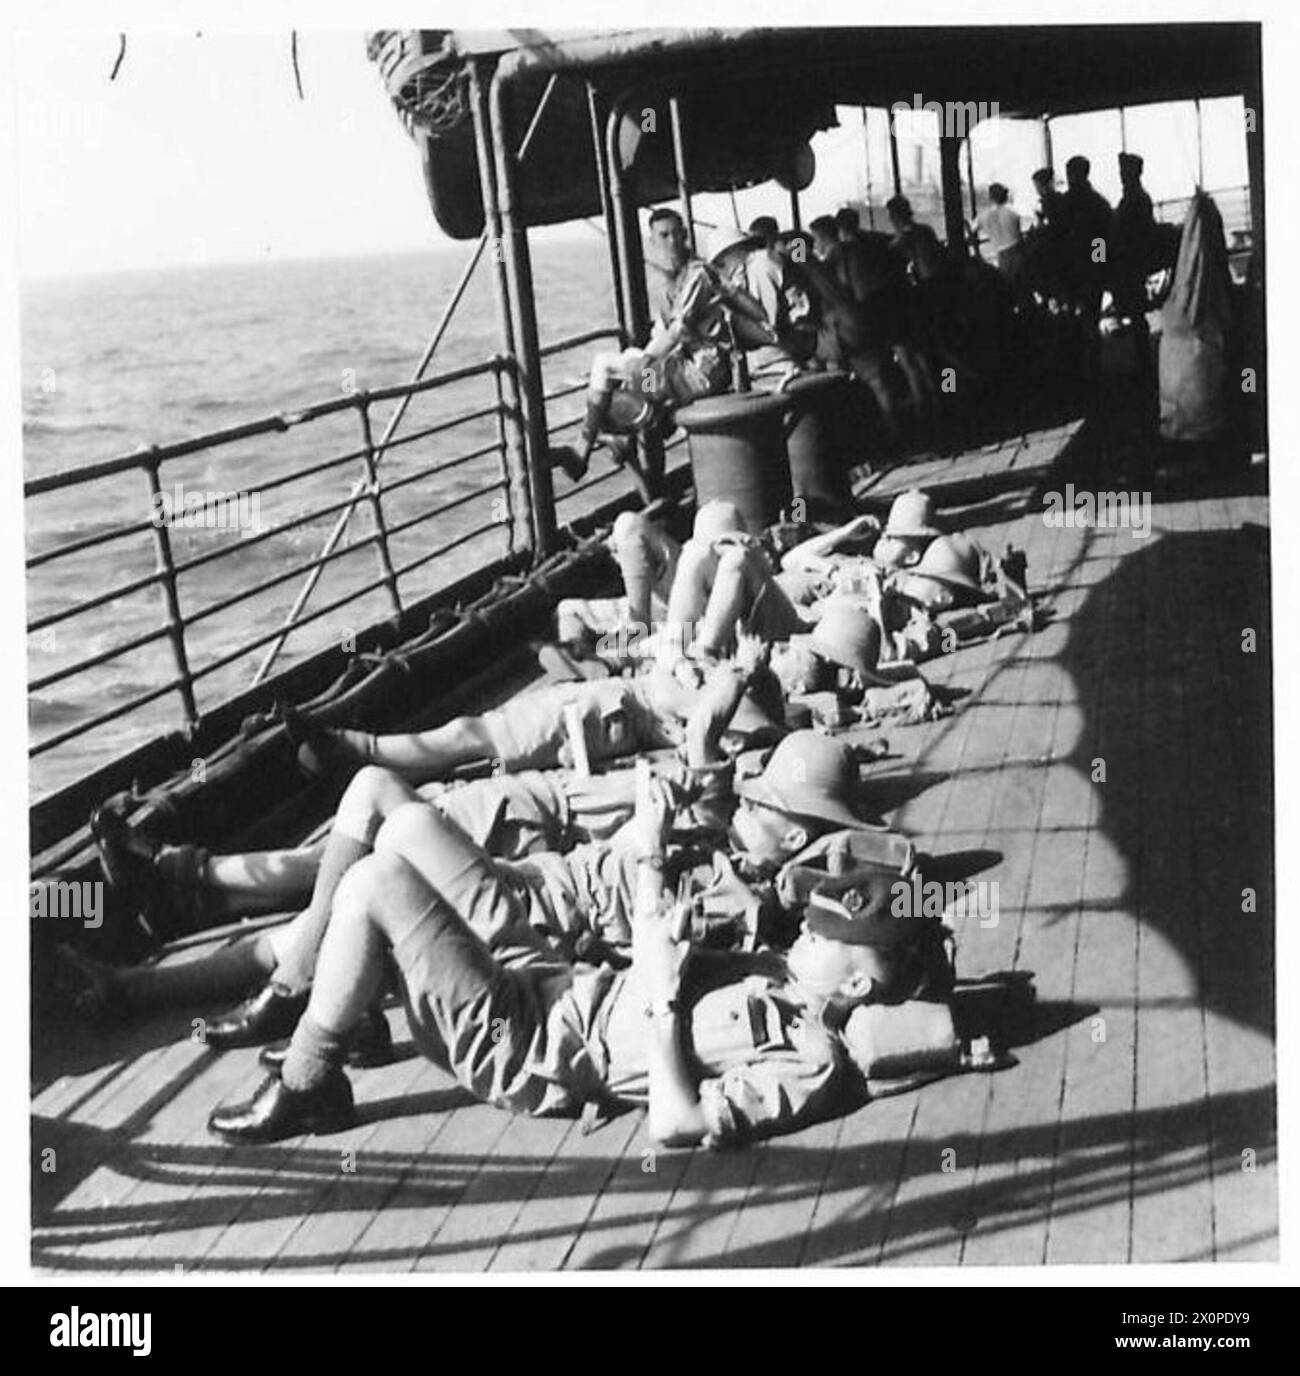 FOTOS AUF EINEM TRUPPENSCHIFF IN EINEM KONVOI IN DEN NAHEN OSTEN - SIESTA! Die meisten Passagiere des Truppenschiffs entspannen sich nach dem Mittagessen. Hier ist ein Blick auf eines der Decks. Fotografisches negativ, britische Armee Stockfoto